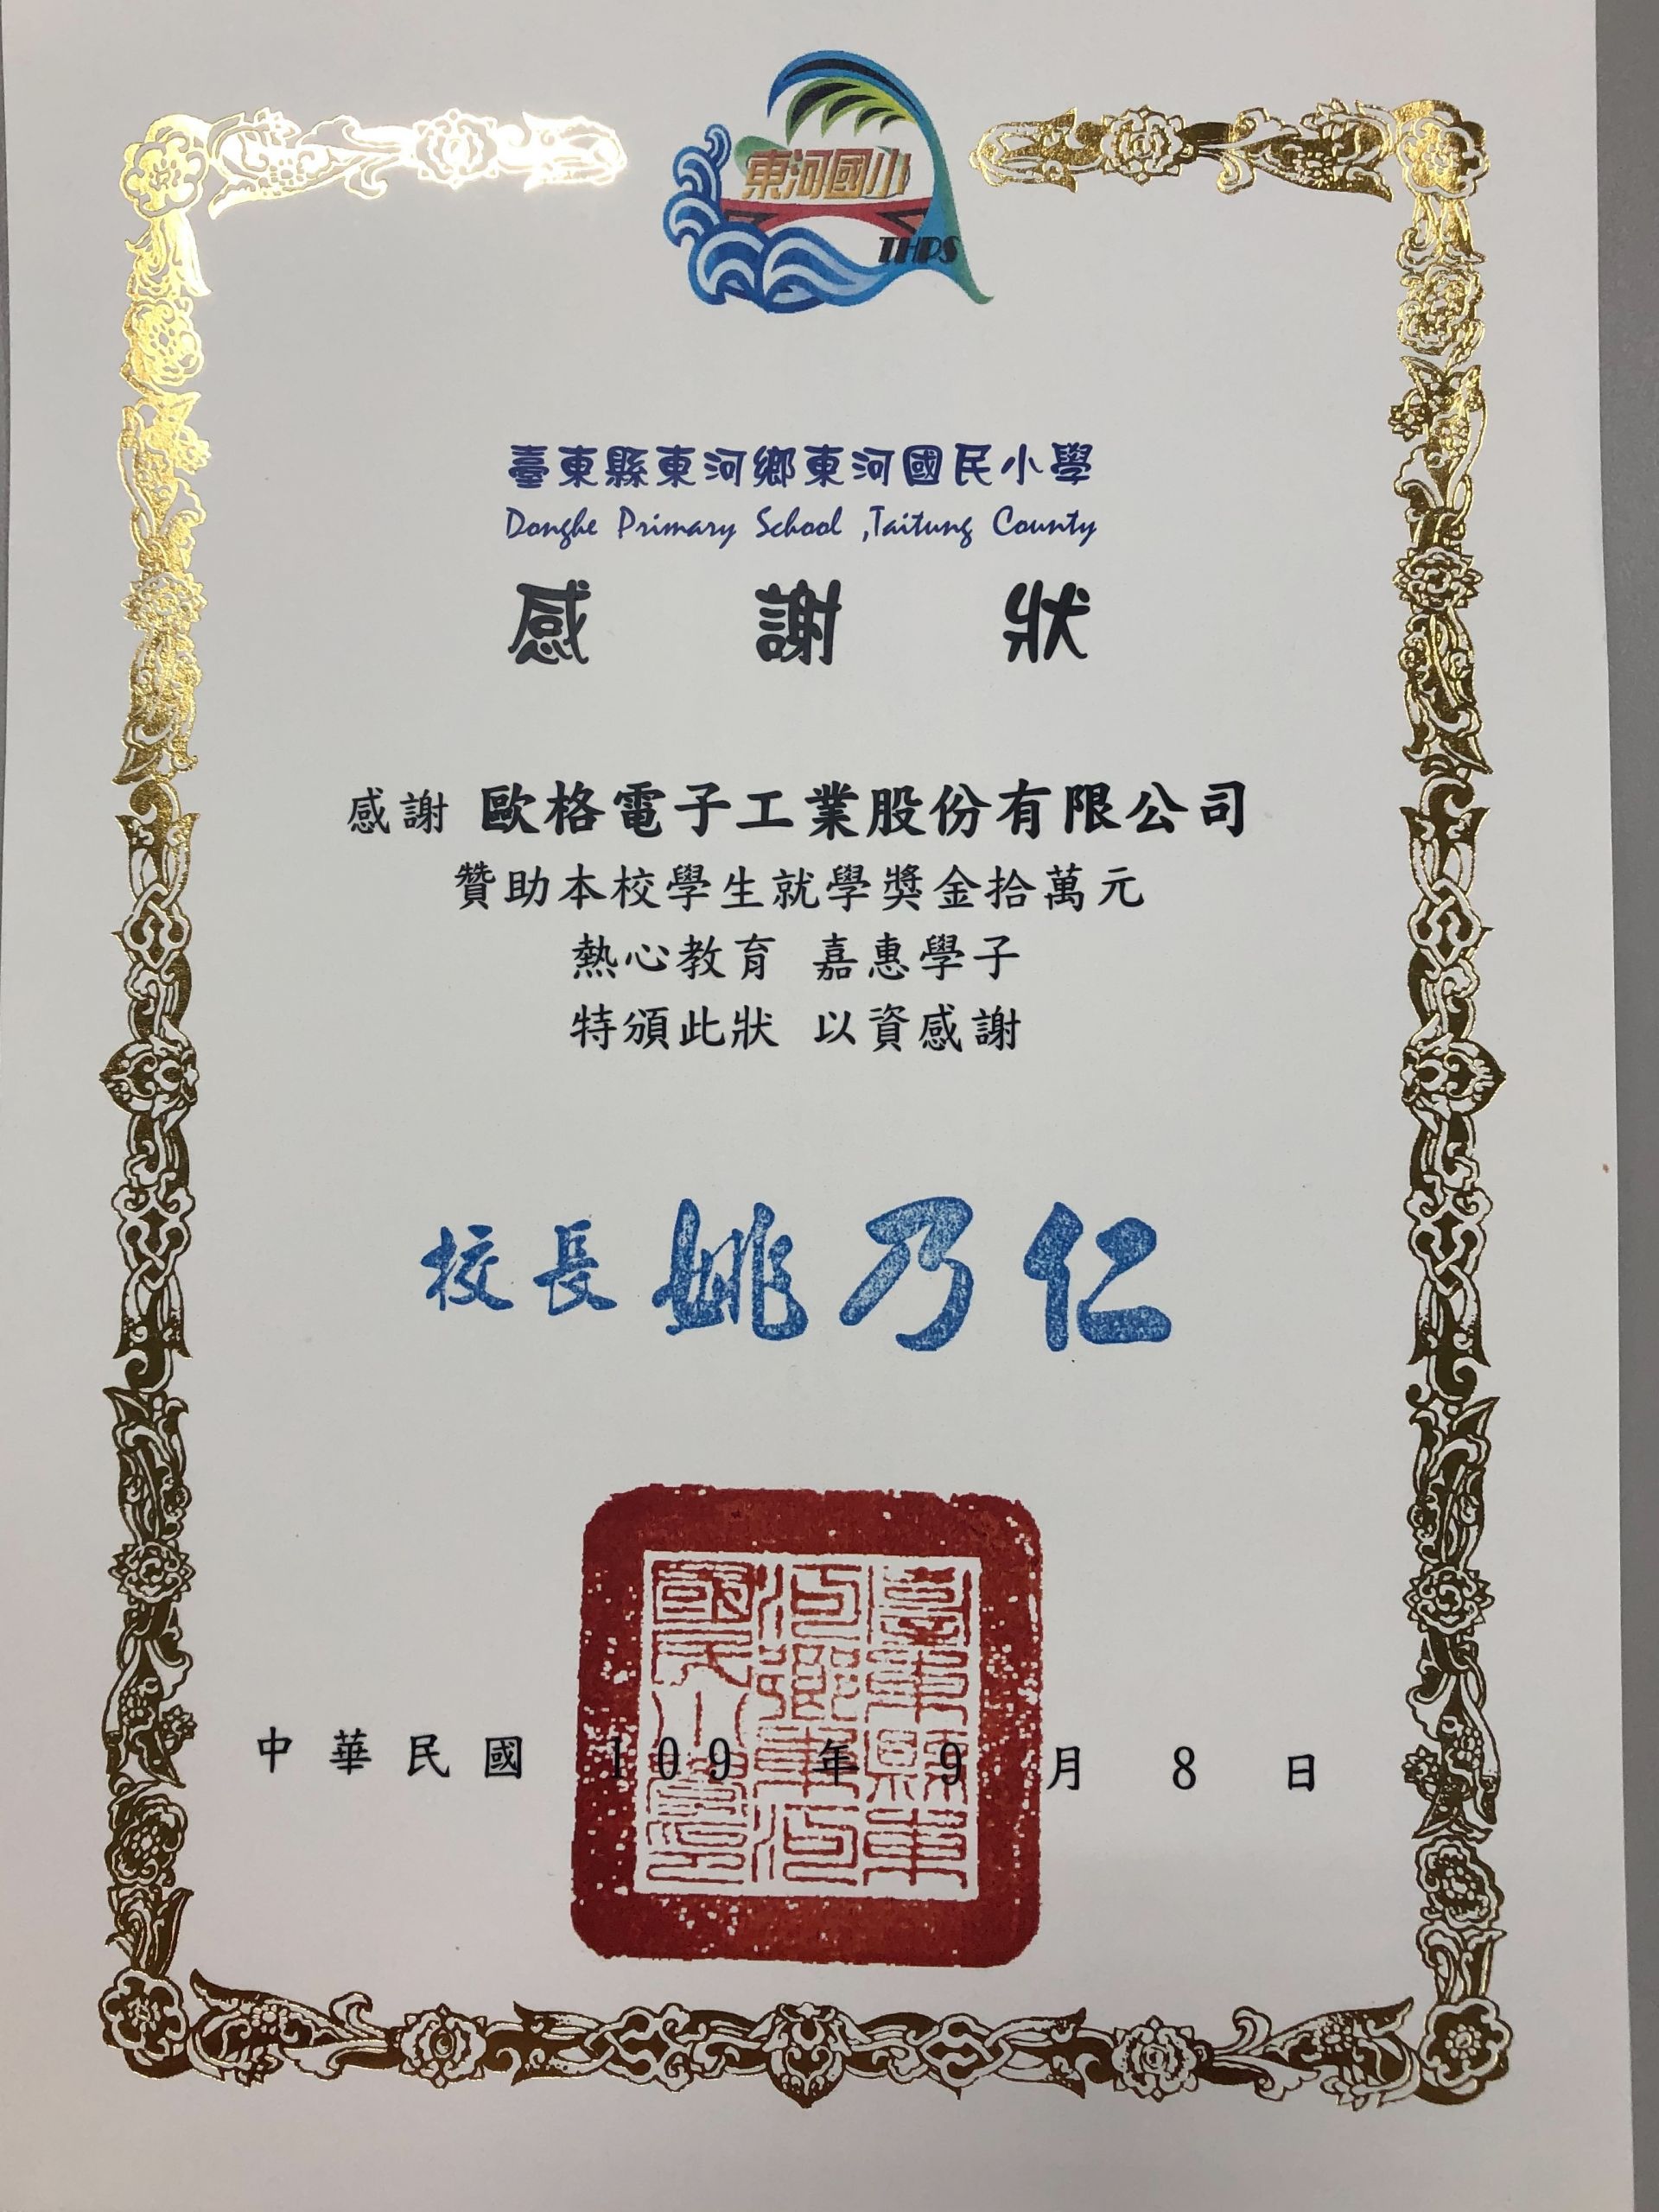 AHOKU mendapatkan Penghargaan Sertifikat Penghargaan Beasiswa 2020 dari Sekolah Dasar Donghe